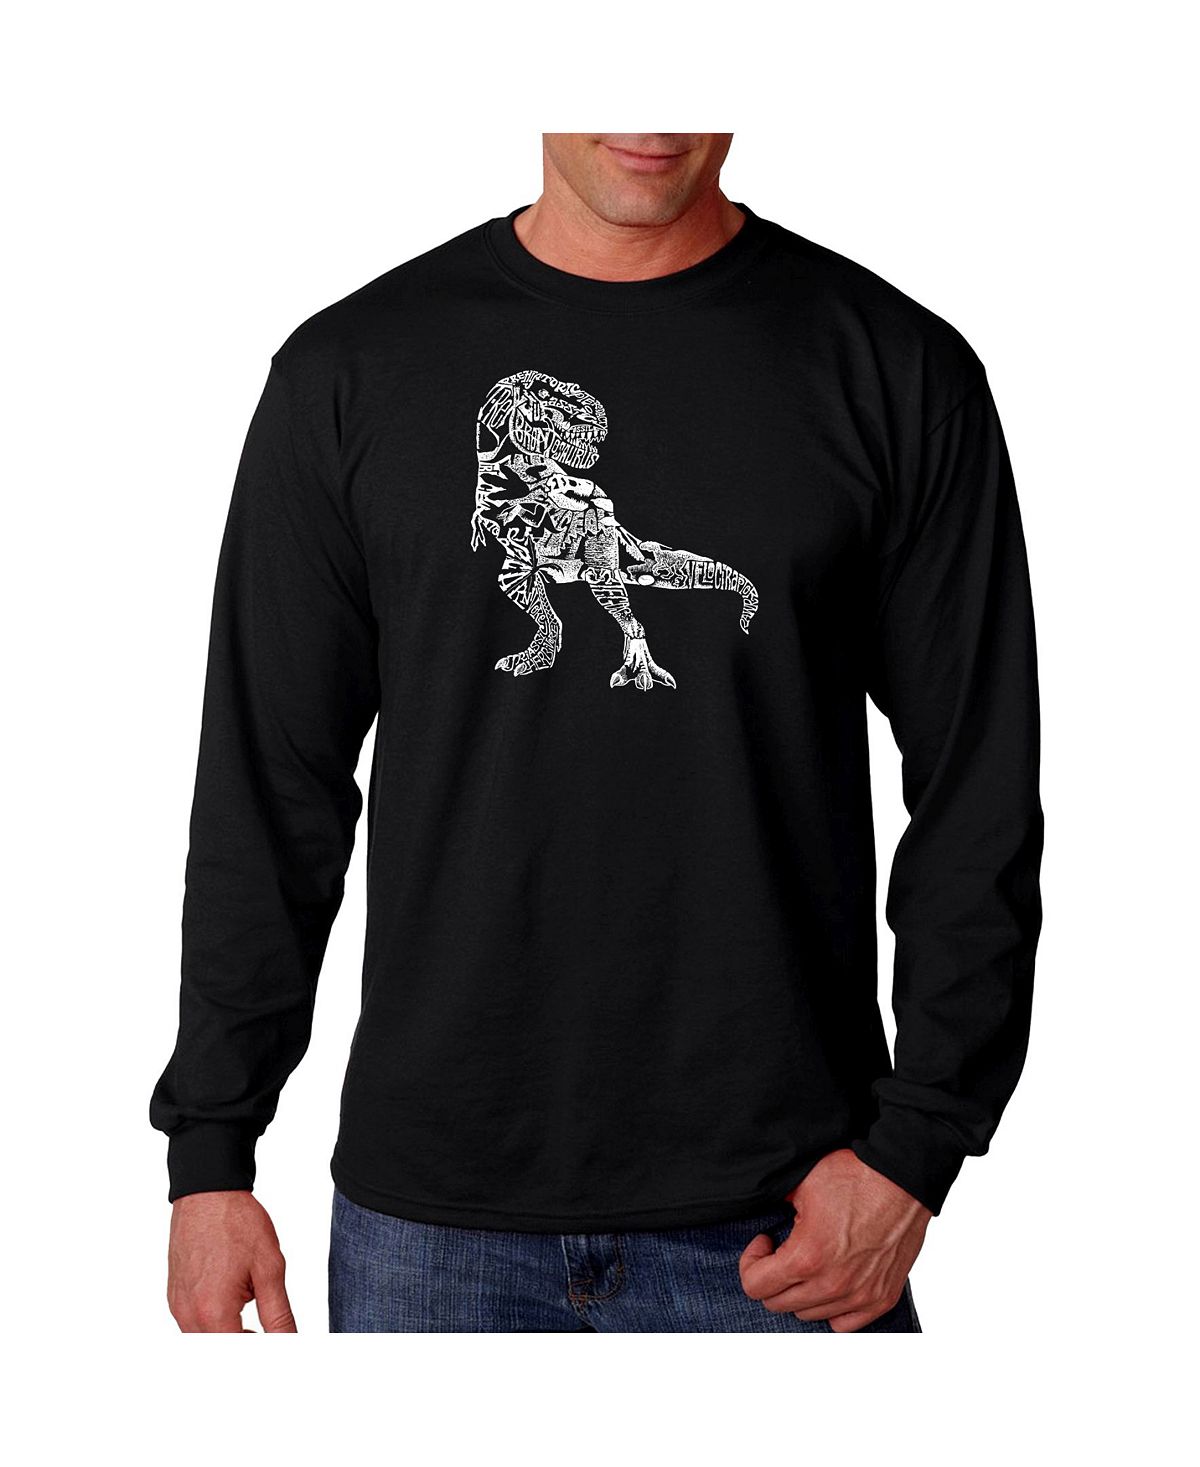 Мужская футболка с длинным рукавом word art - динозавр LA Pop Art, черный мужская футболка с длинным рукавом word art la pop art черный